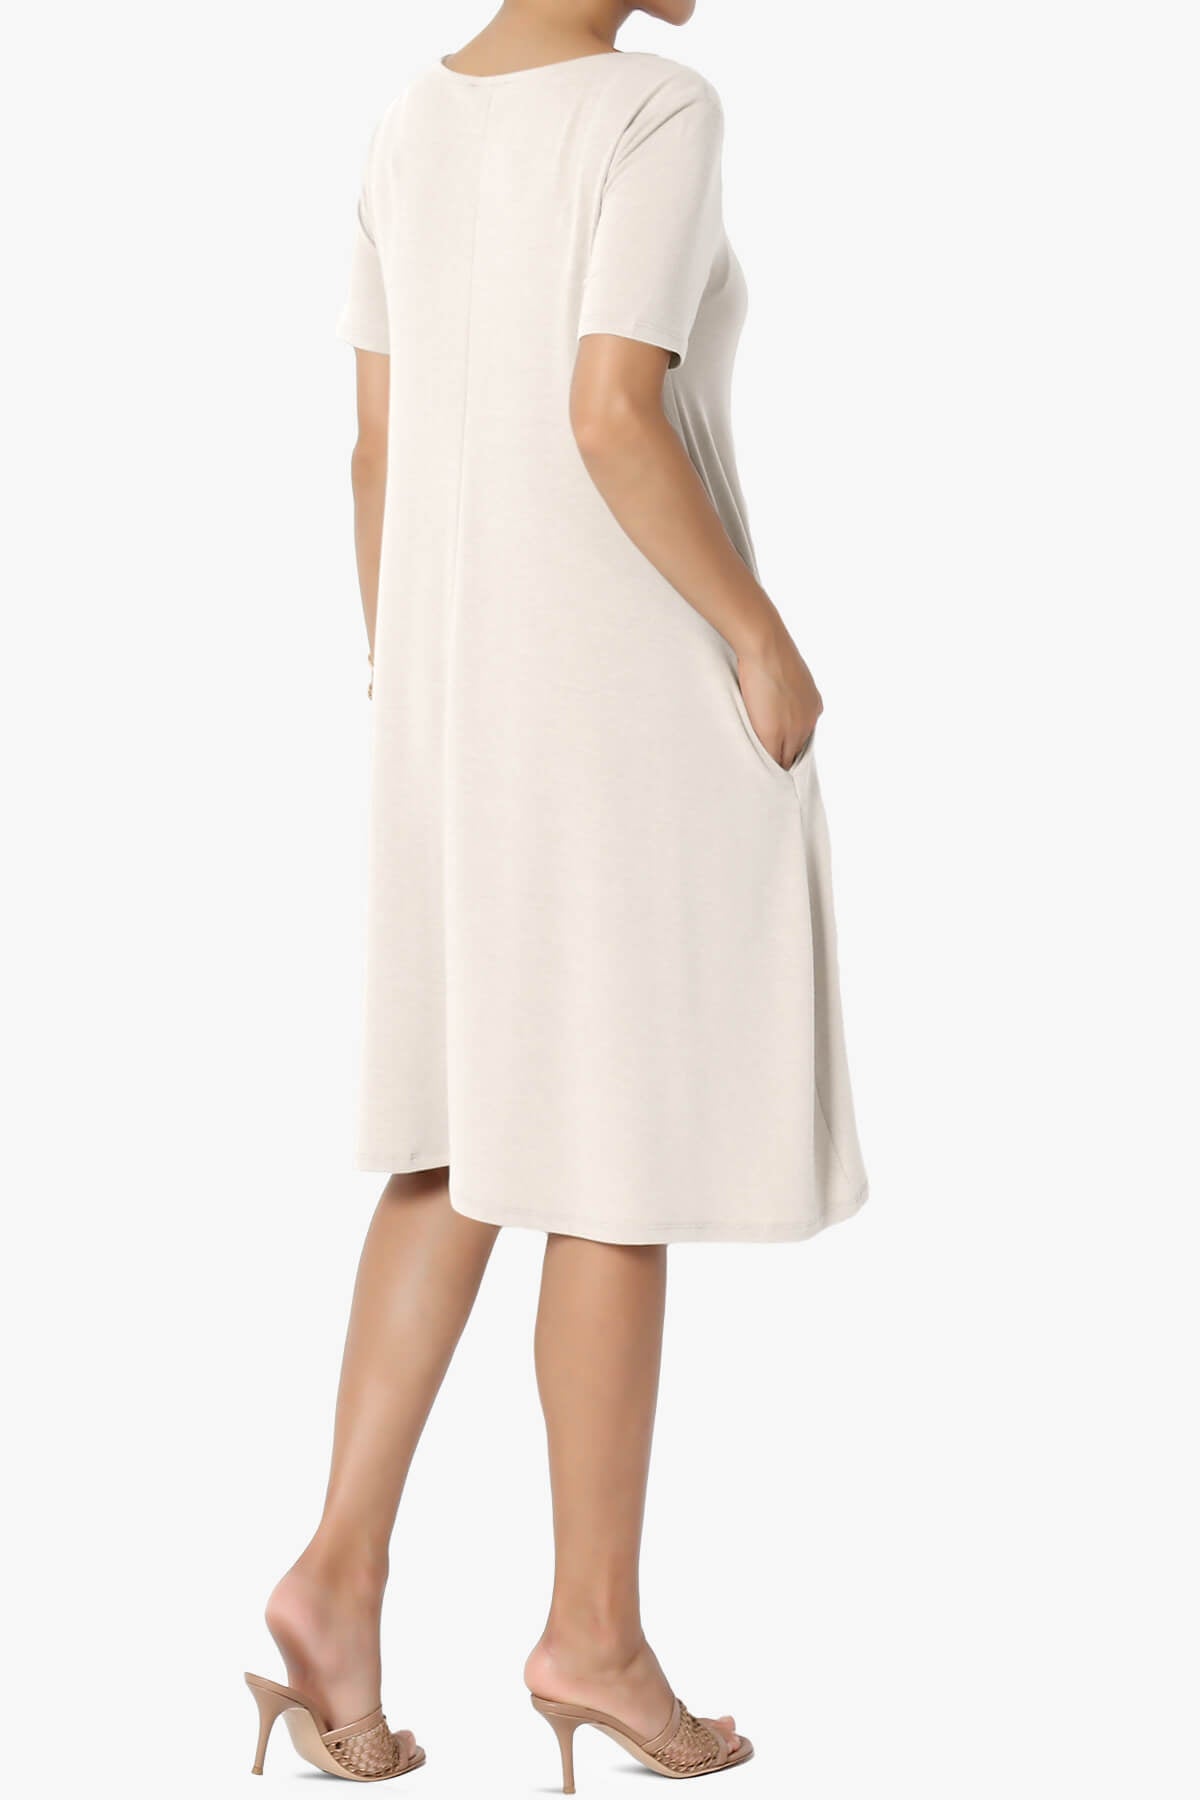 Allie Short Sleeve Jersey A-Line Dress SAND BEIGE_4